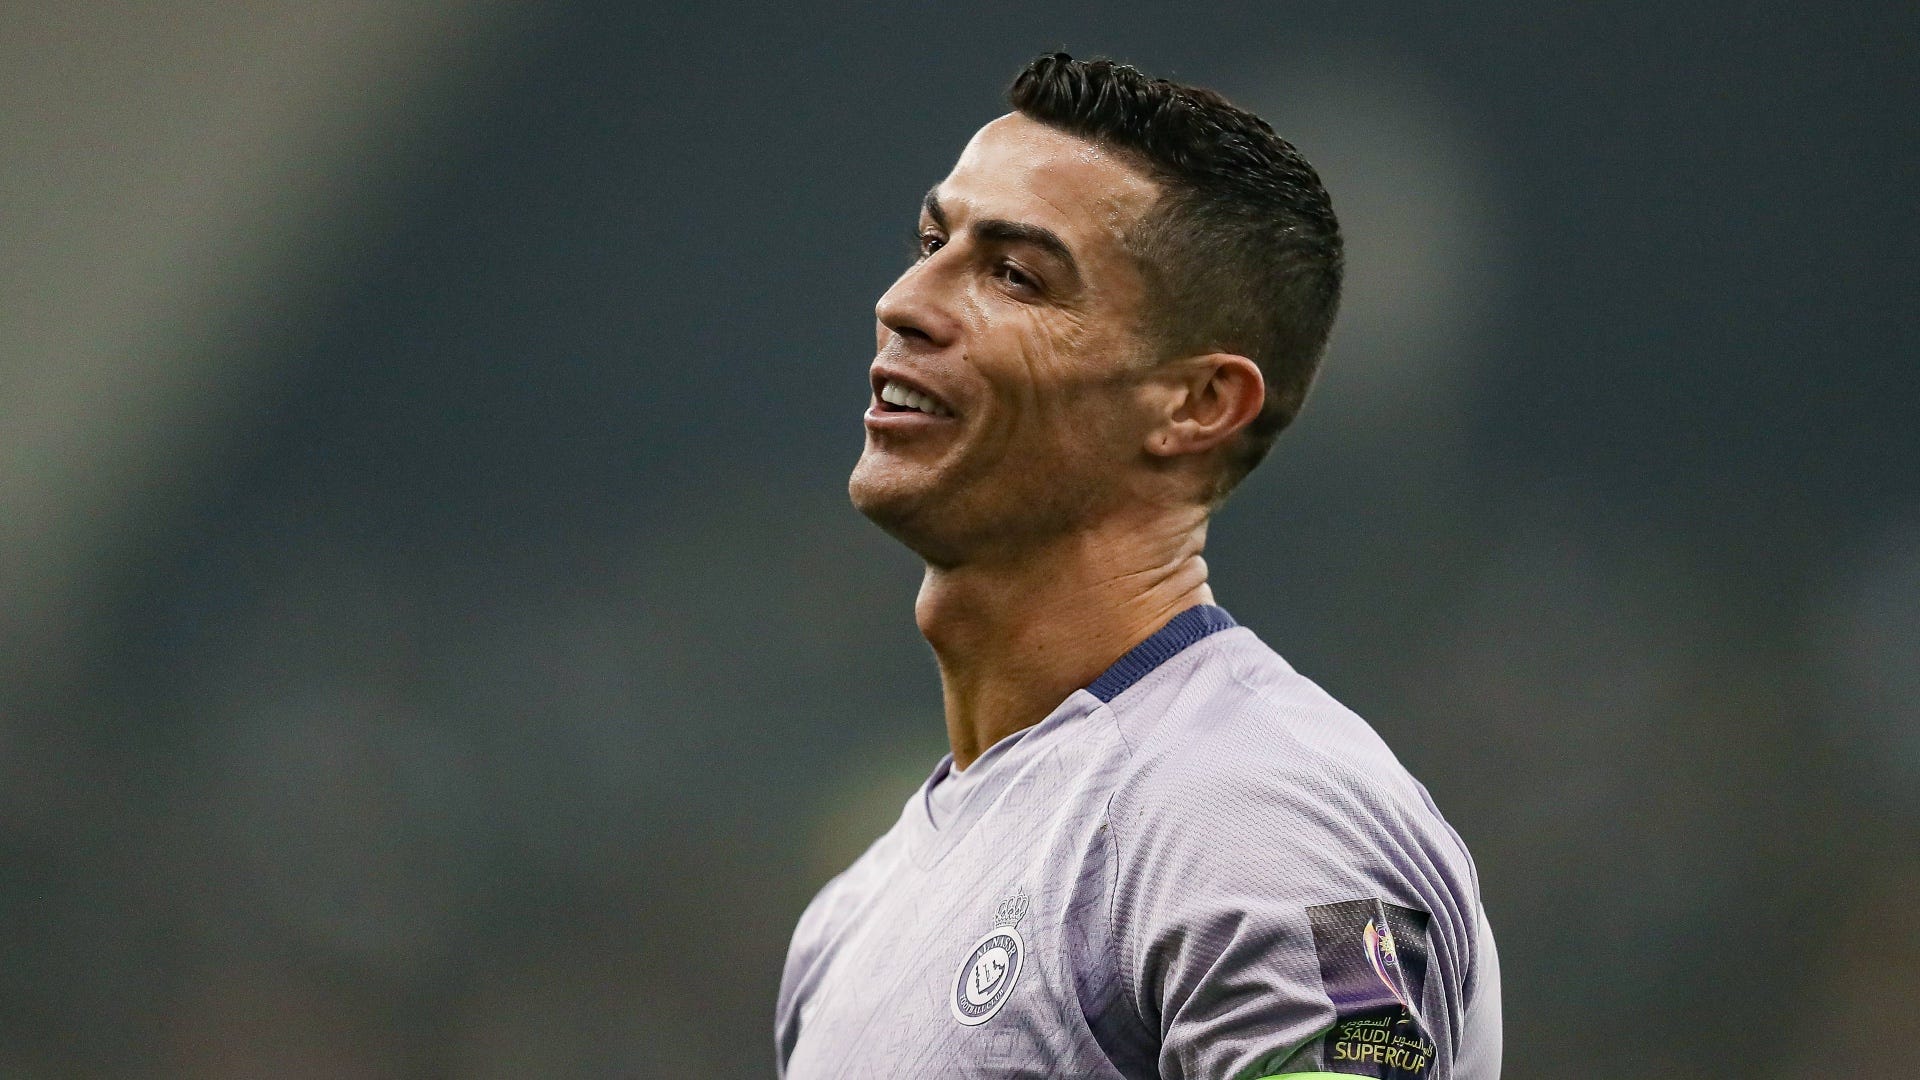 Luiz Gustavo über Cristiano Ronaldo: "Macht es schwieriger für uns"